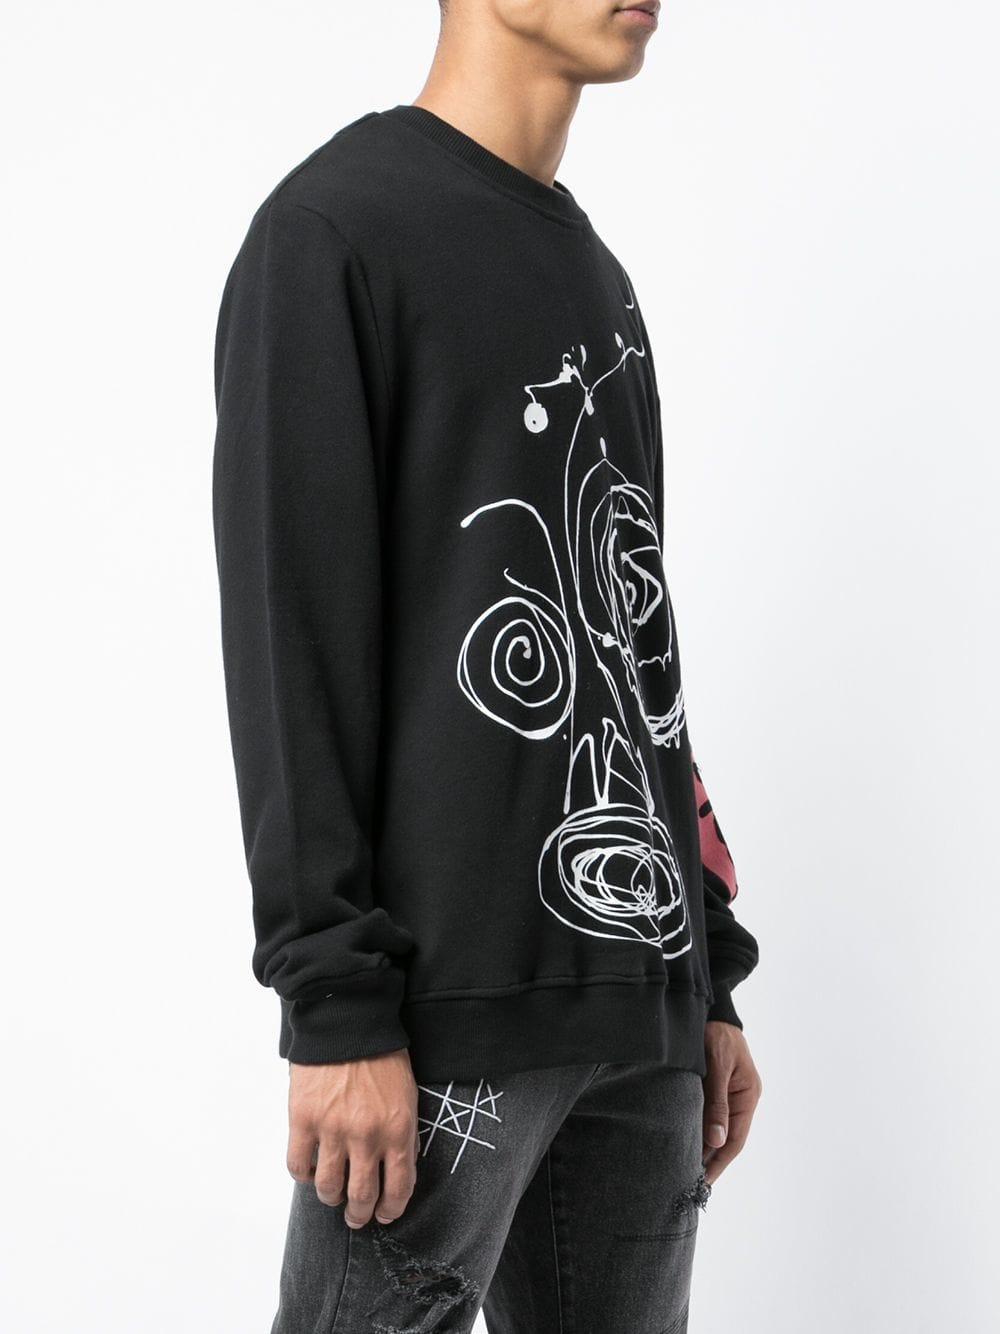 Haculla Drippy Crewneck Sweatshirt in Black for Men - Lyst